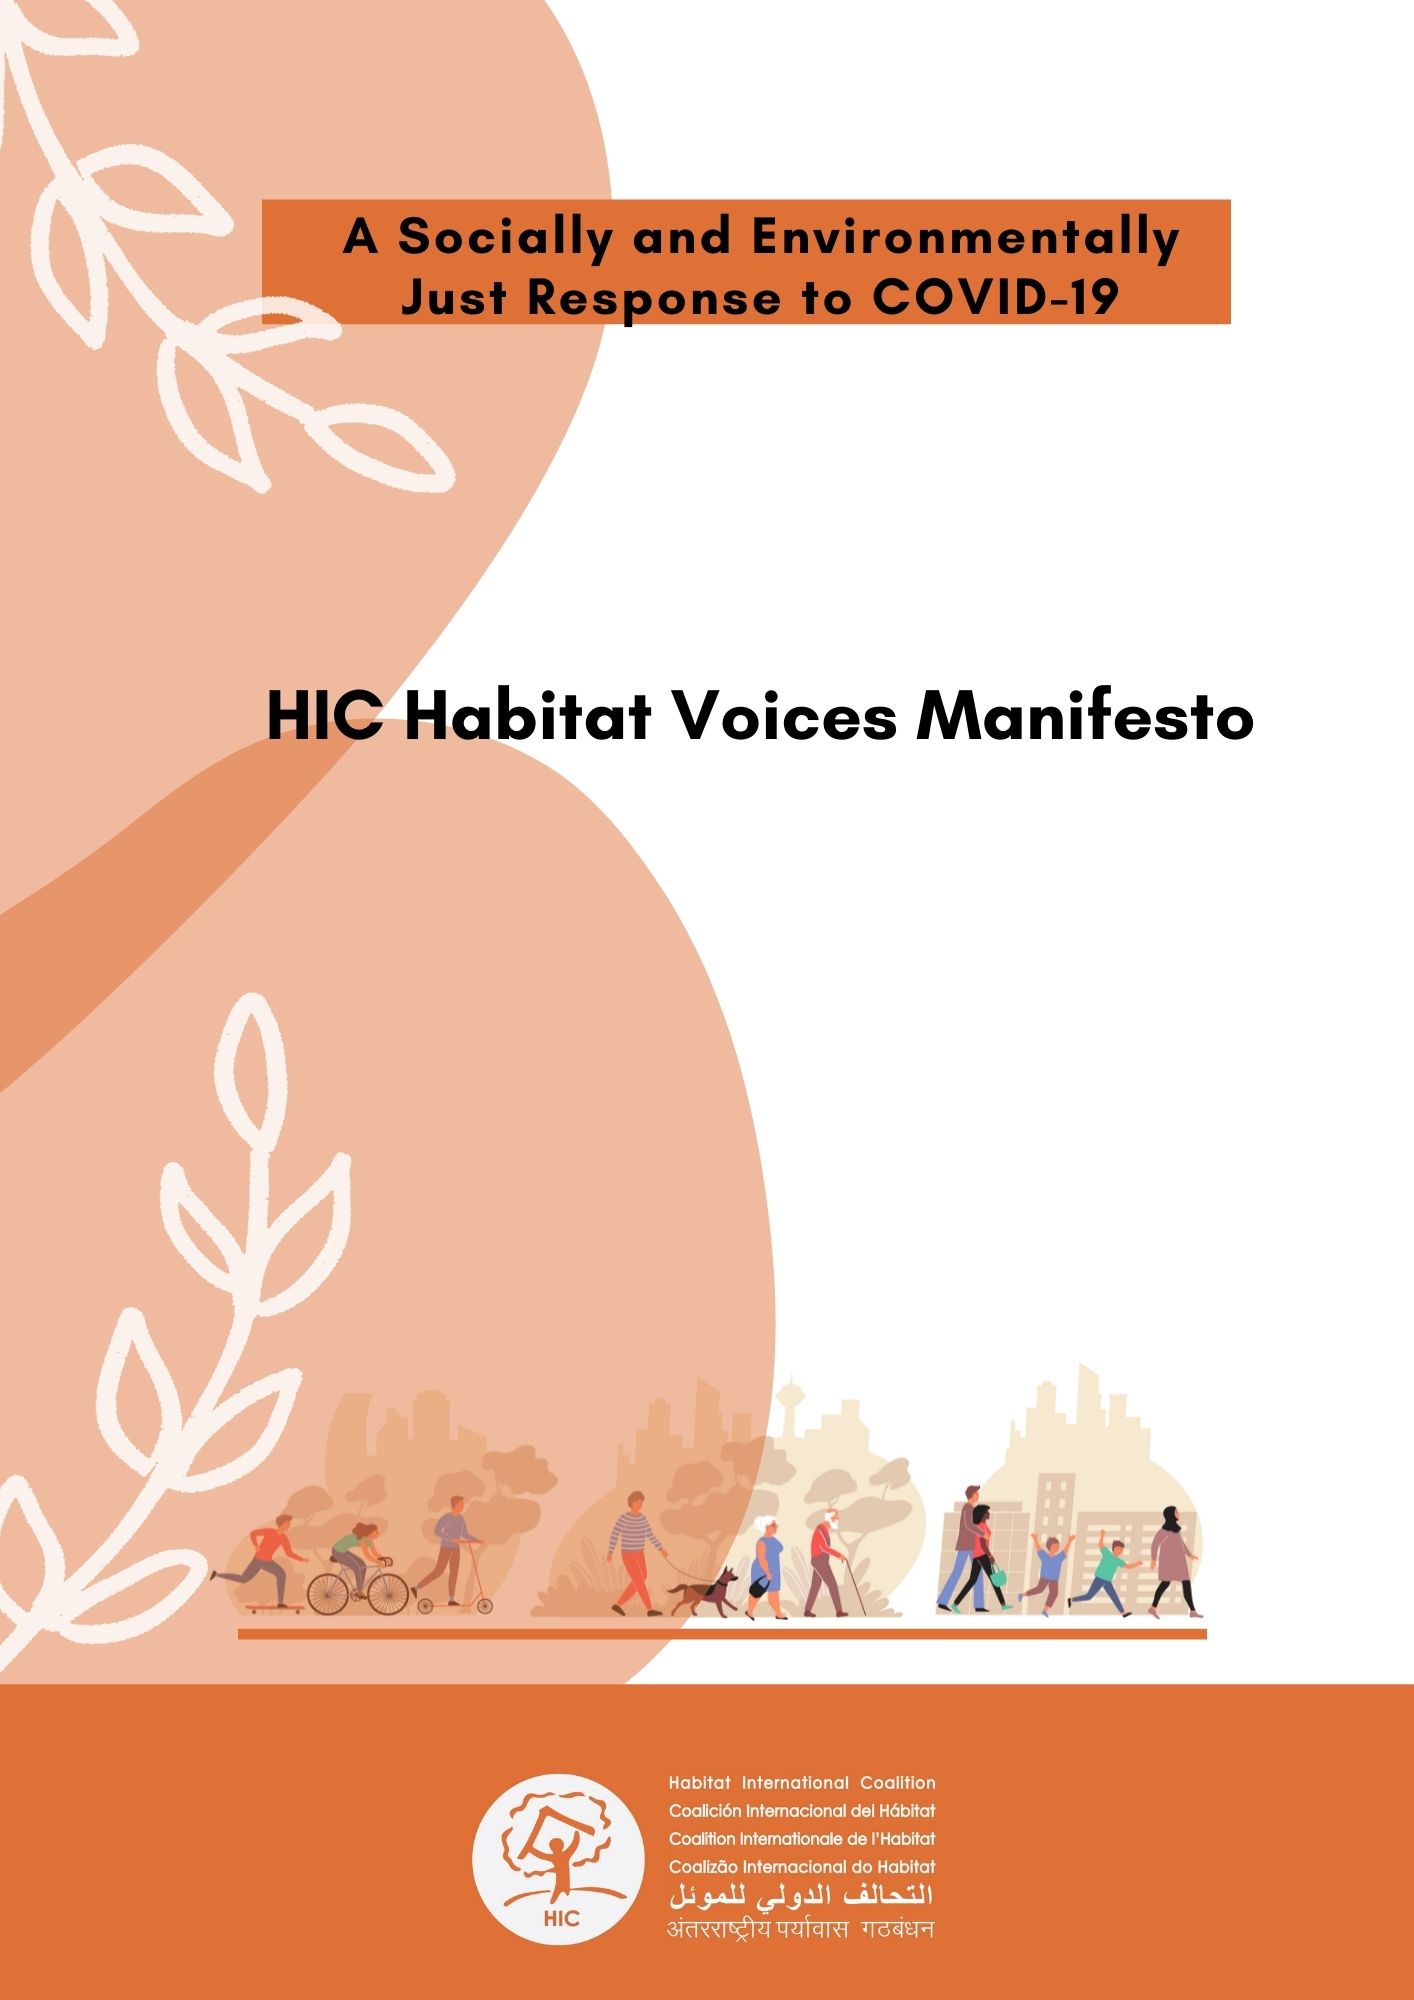 El Manifiesto de las Voces del Hábitat de HIC